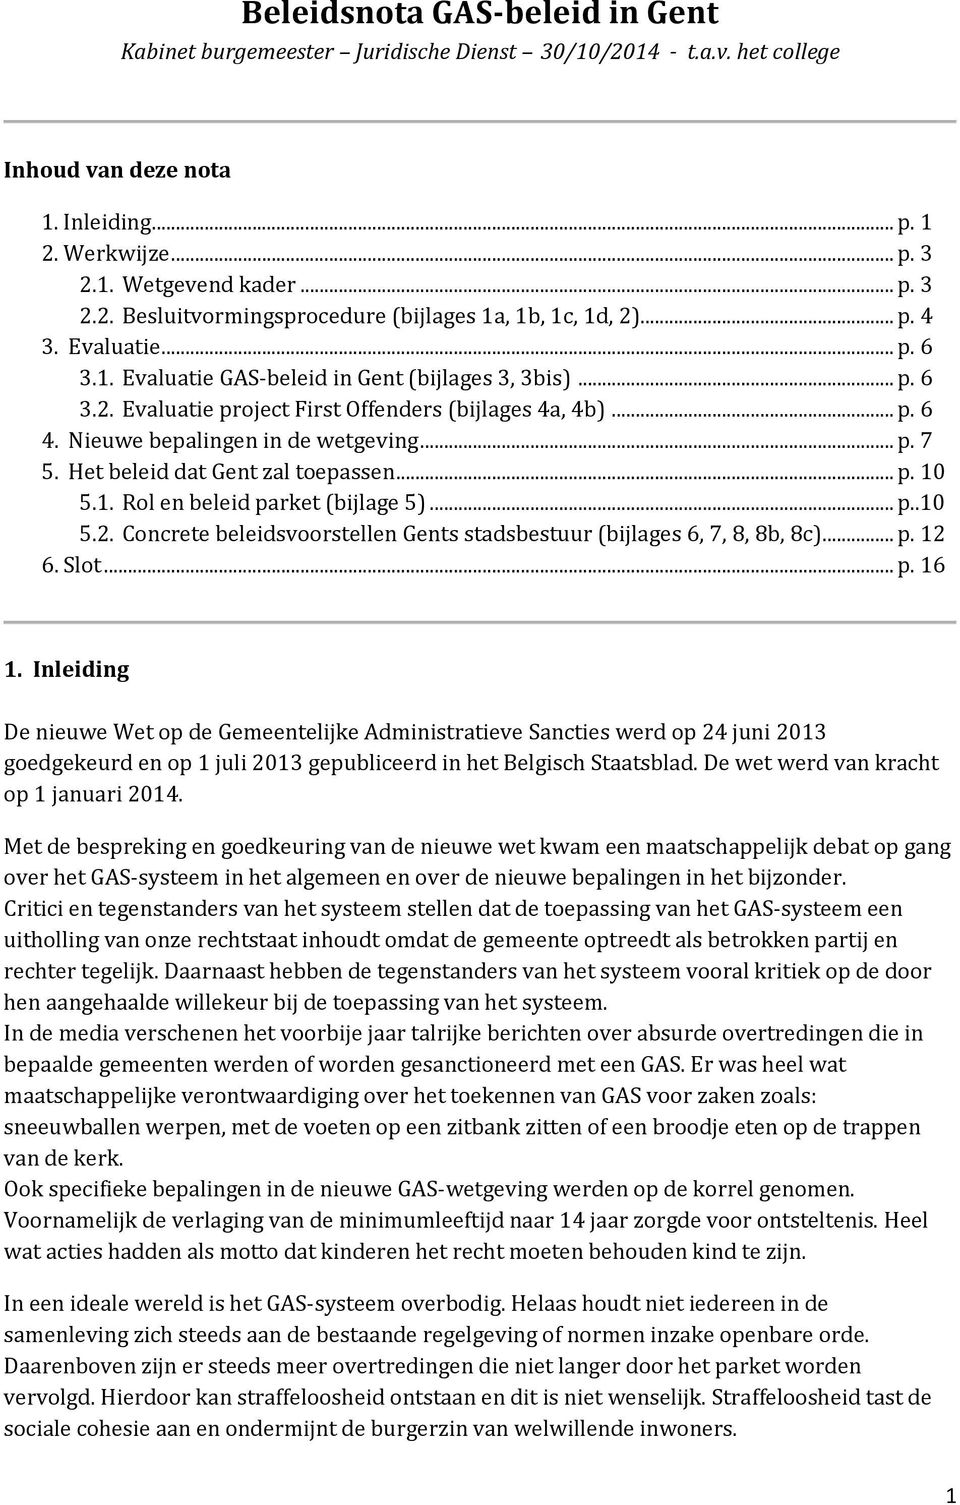 Het beleid dat Gent zal toepassen... p. 10 5.1. Rol en beleid parket (bijlage 5)... p..10 5.2. Concrete beleidsvoorstellen Gents stadsbestuur (bijlages 6, 7, 8, 8b, 8c)... p. 12 6. Slot... p. 16 1.